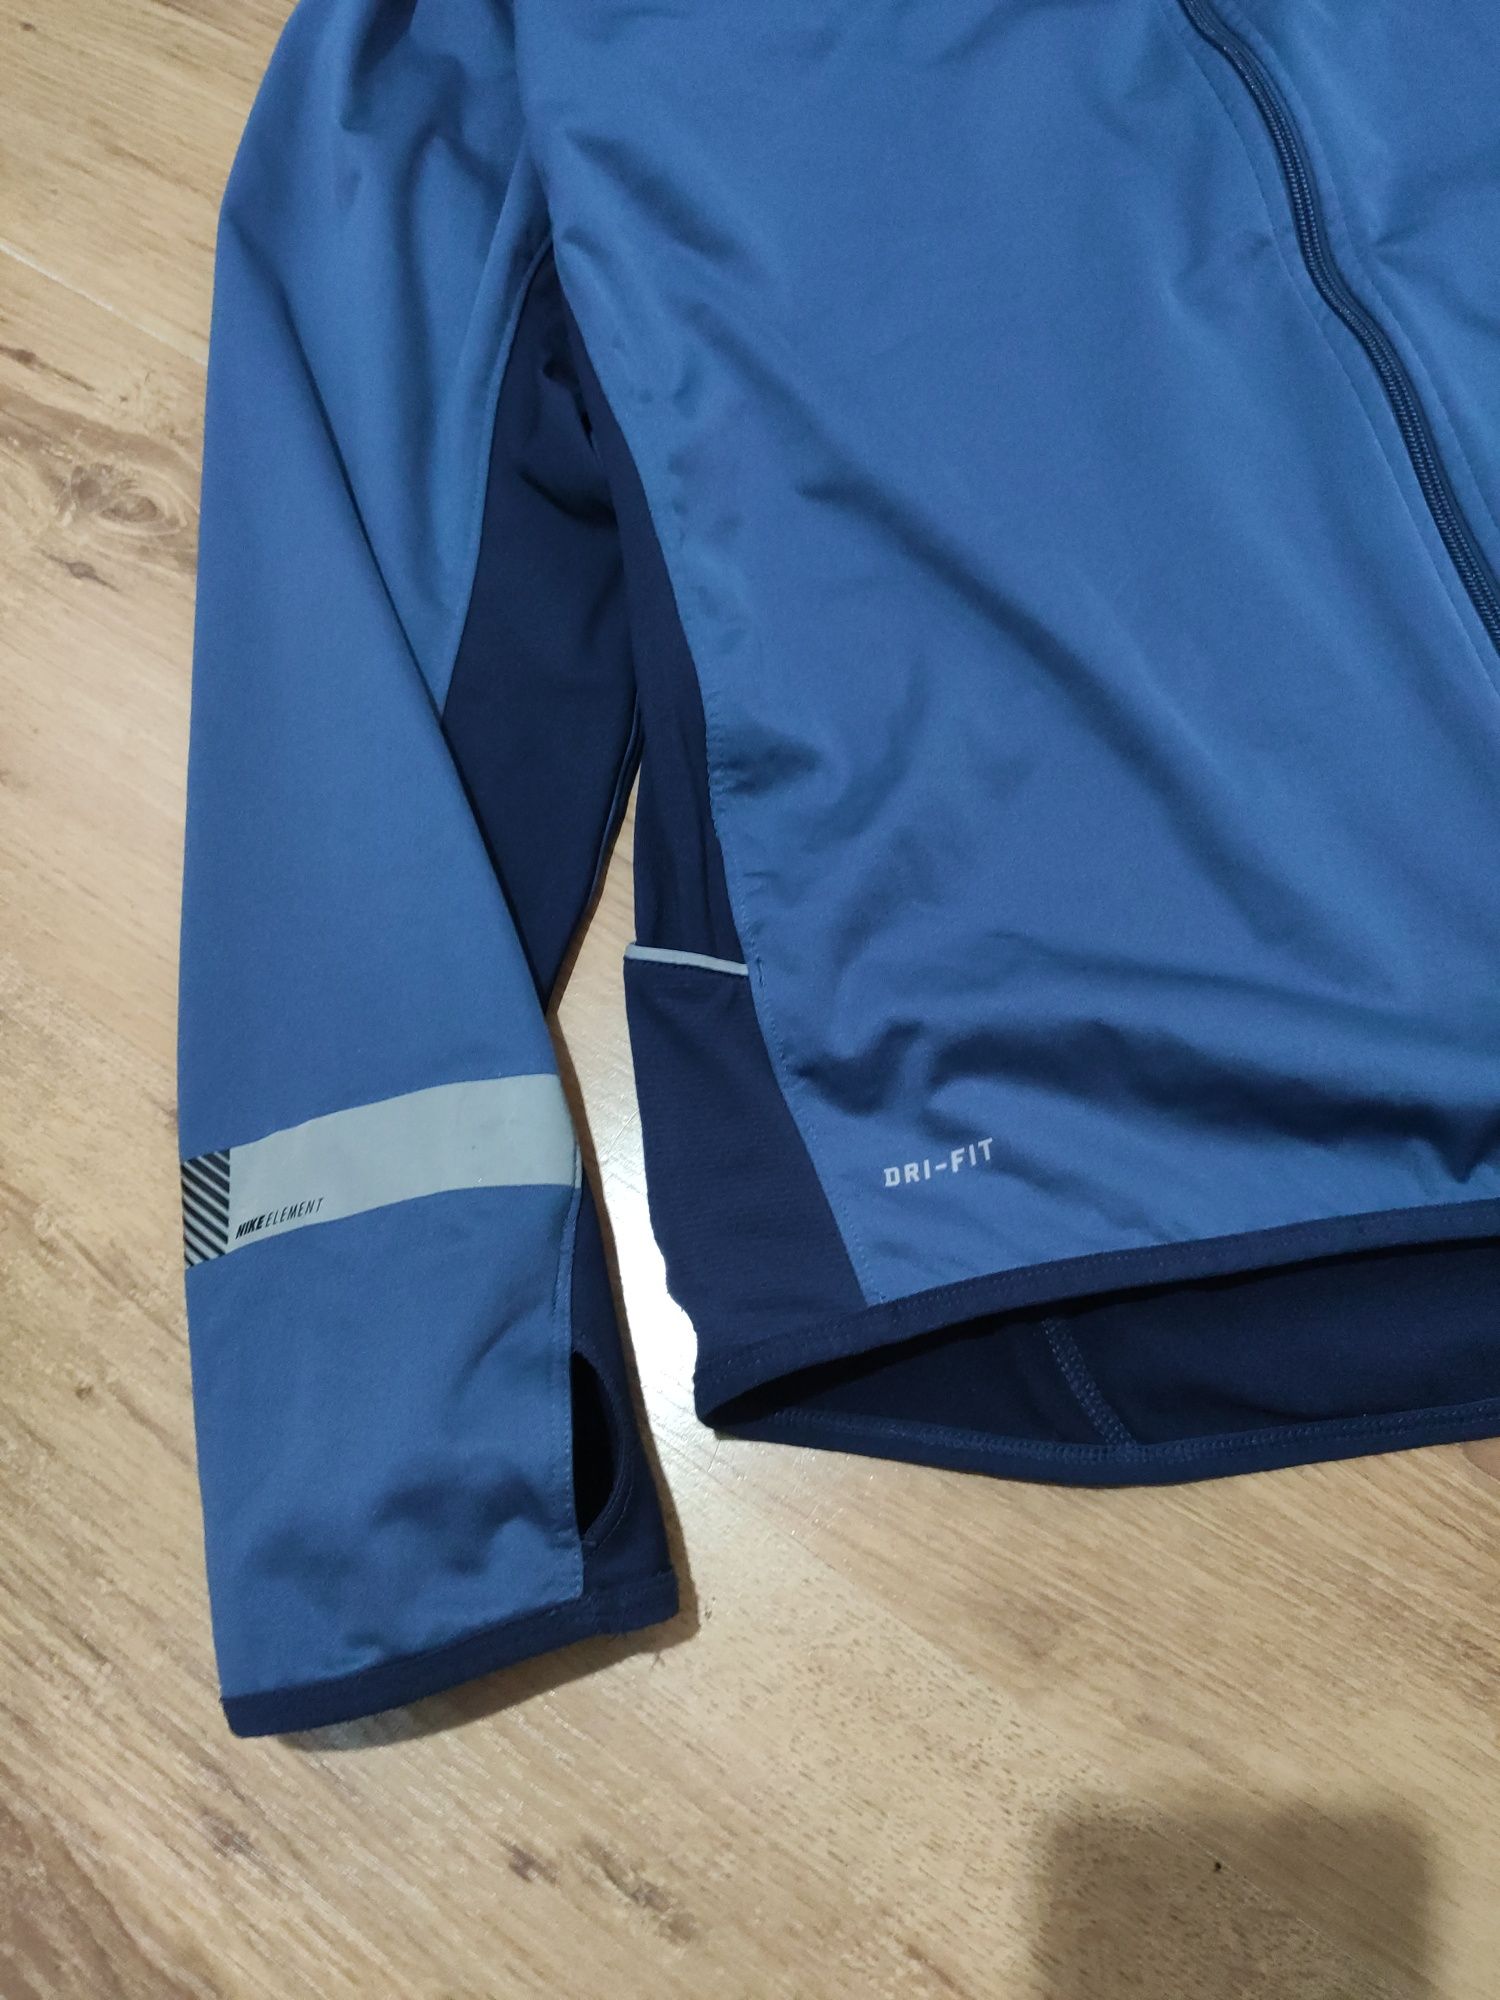 Bluza Nike Dri Fit mărimea XL